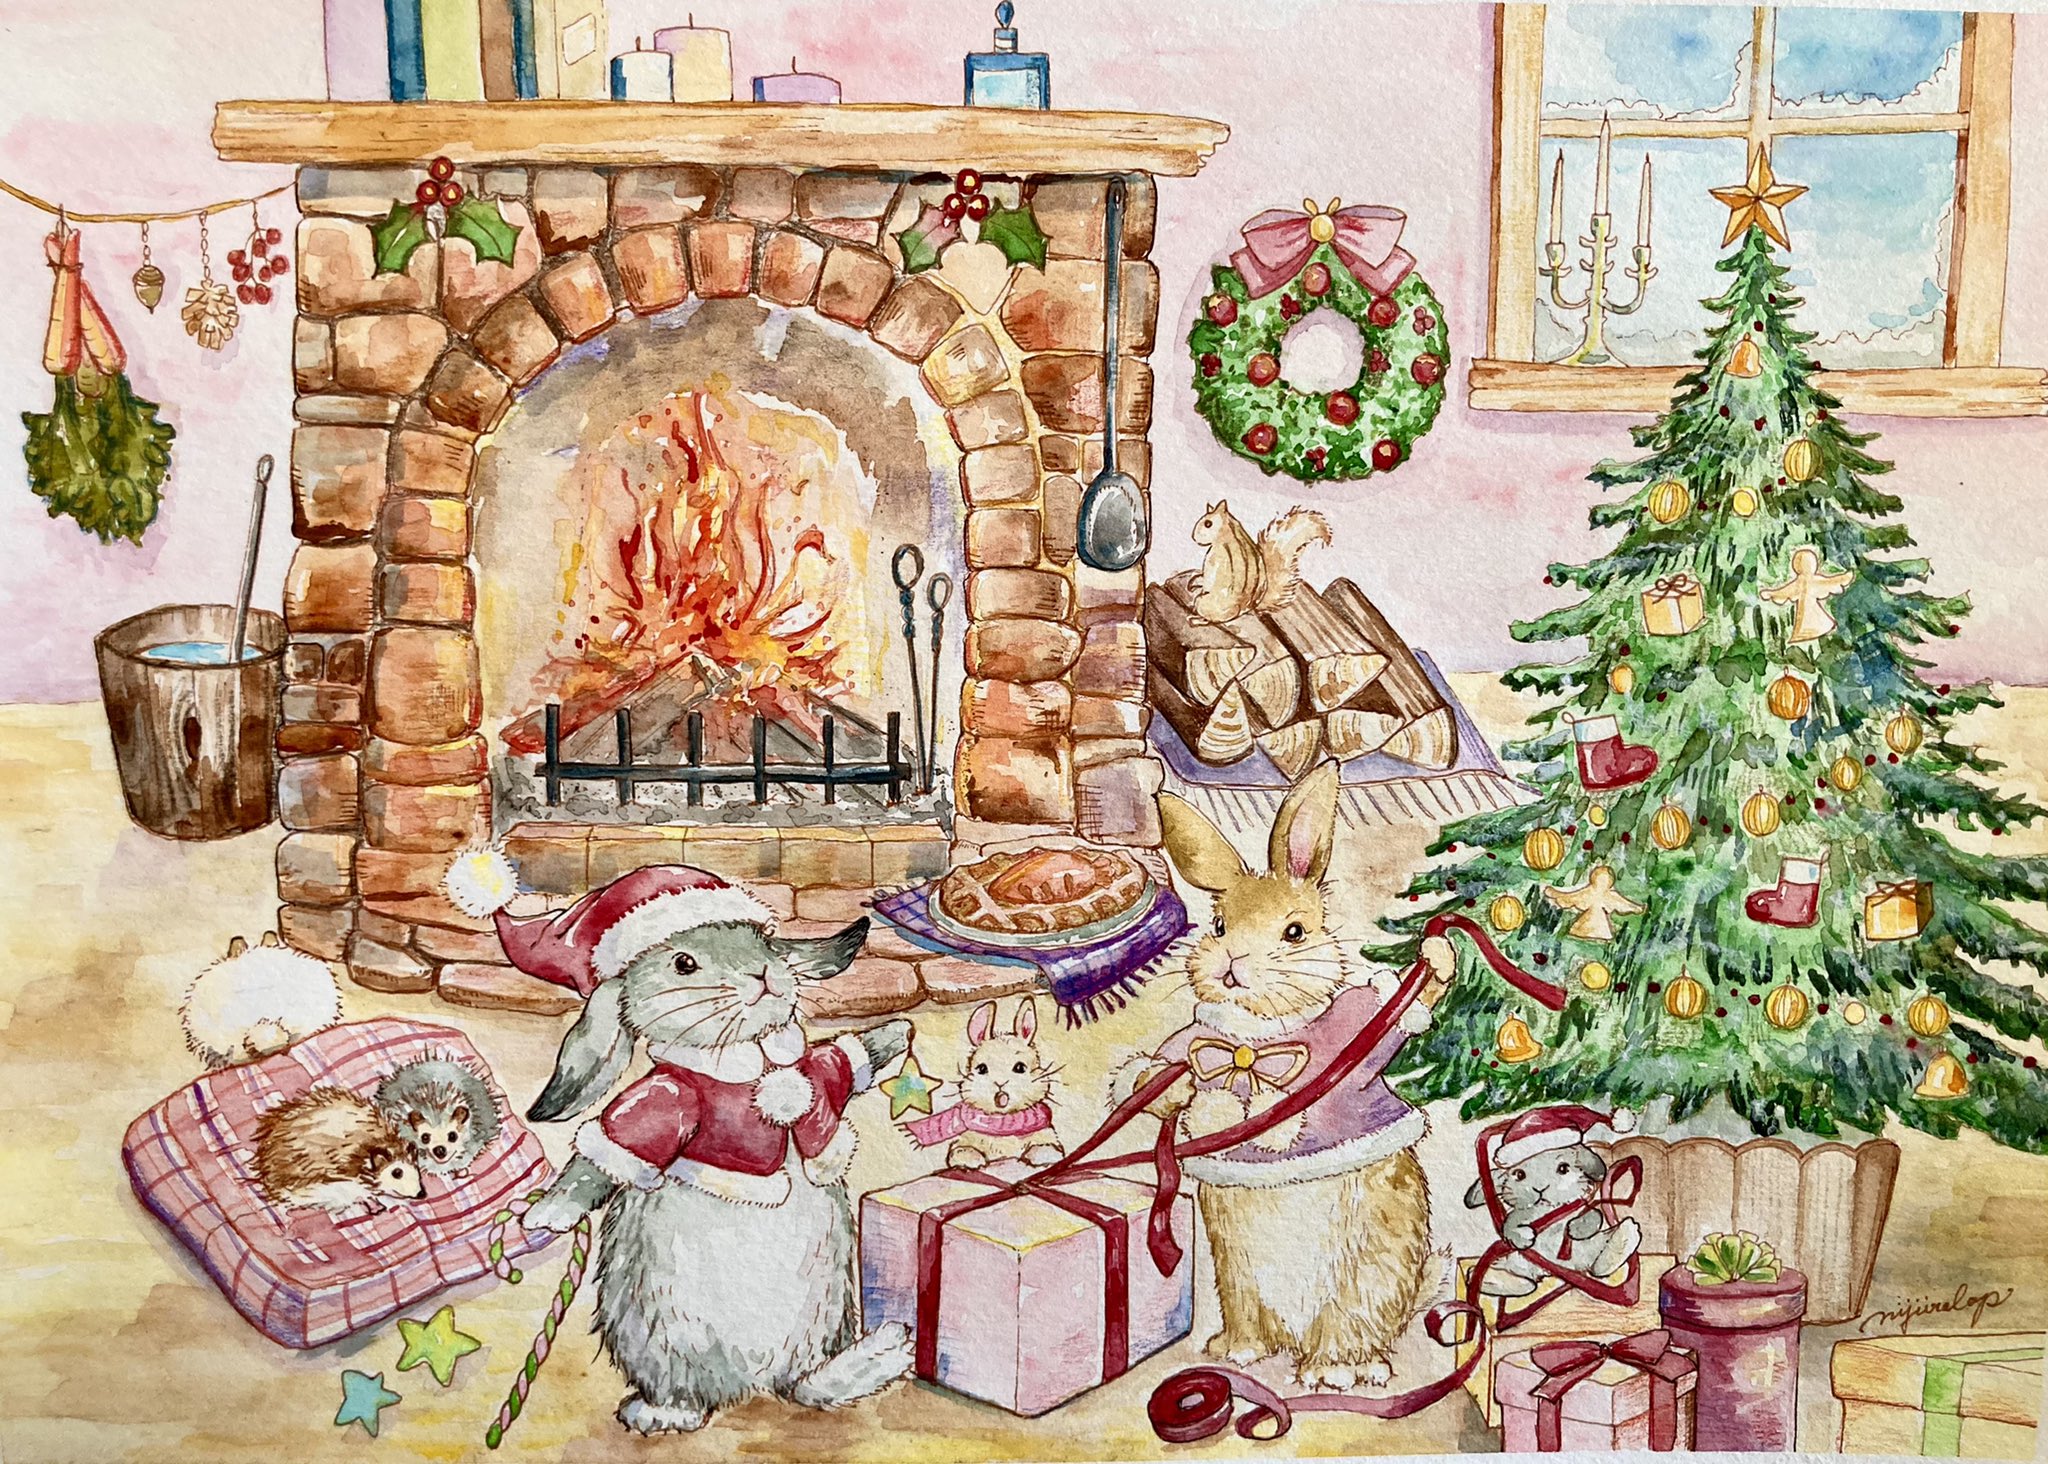 Nijiirolopにじいろロップ 遅れてやってきたクリスマスイラスト着彩 外は雪 森の動物たちも描き加えました 楽しそうな声にみんなが自然と集まり 暖かいお部屋でみんな一緒の時間 薪のパチパチいう音 におい 暖炉を囲んで自然の温もりを感じられるお家